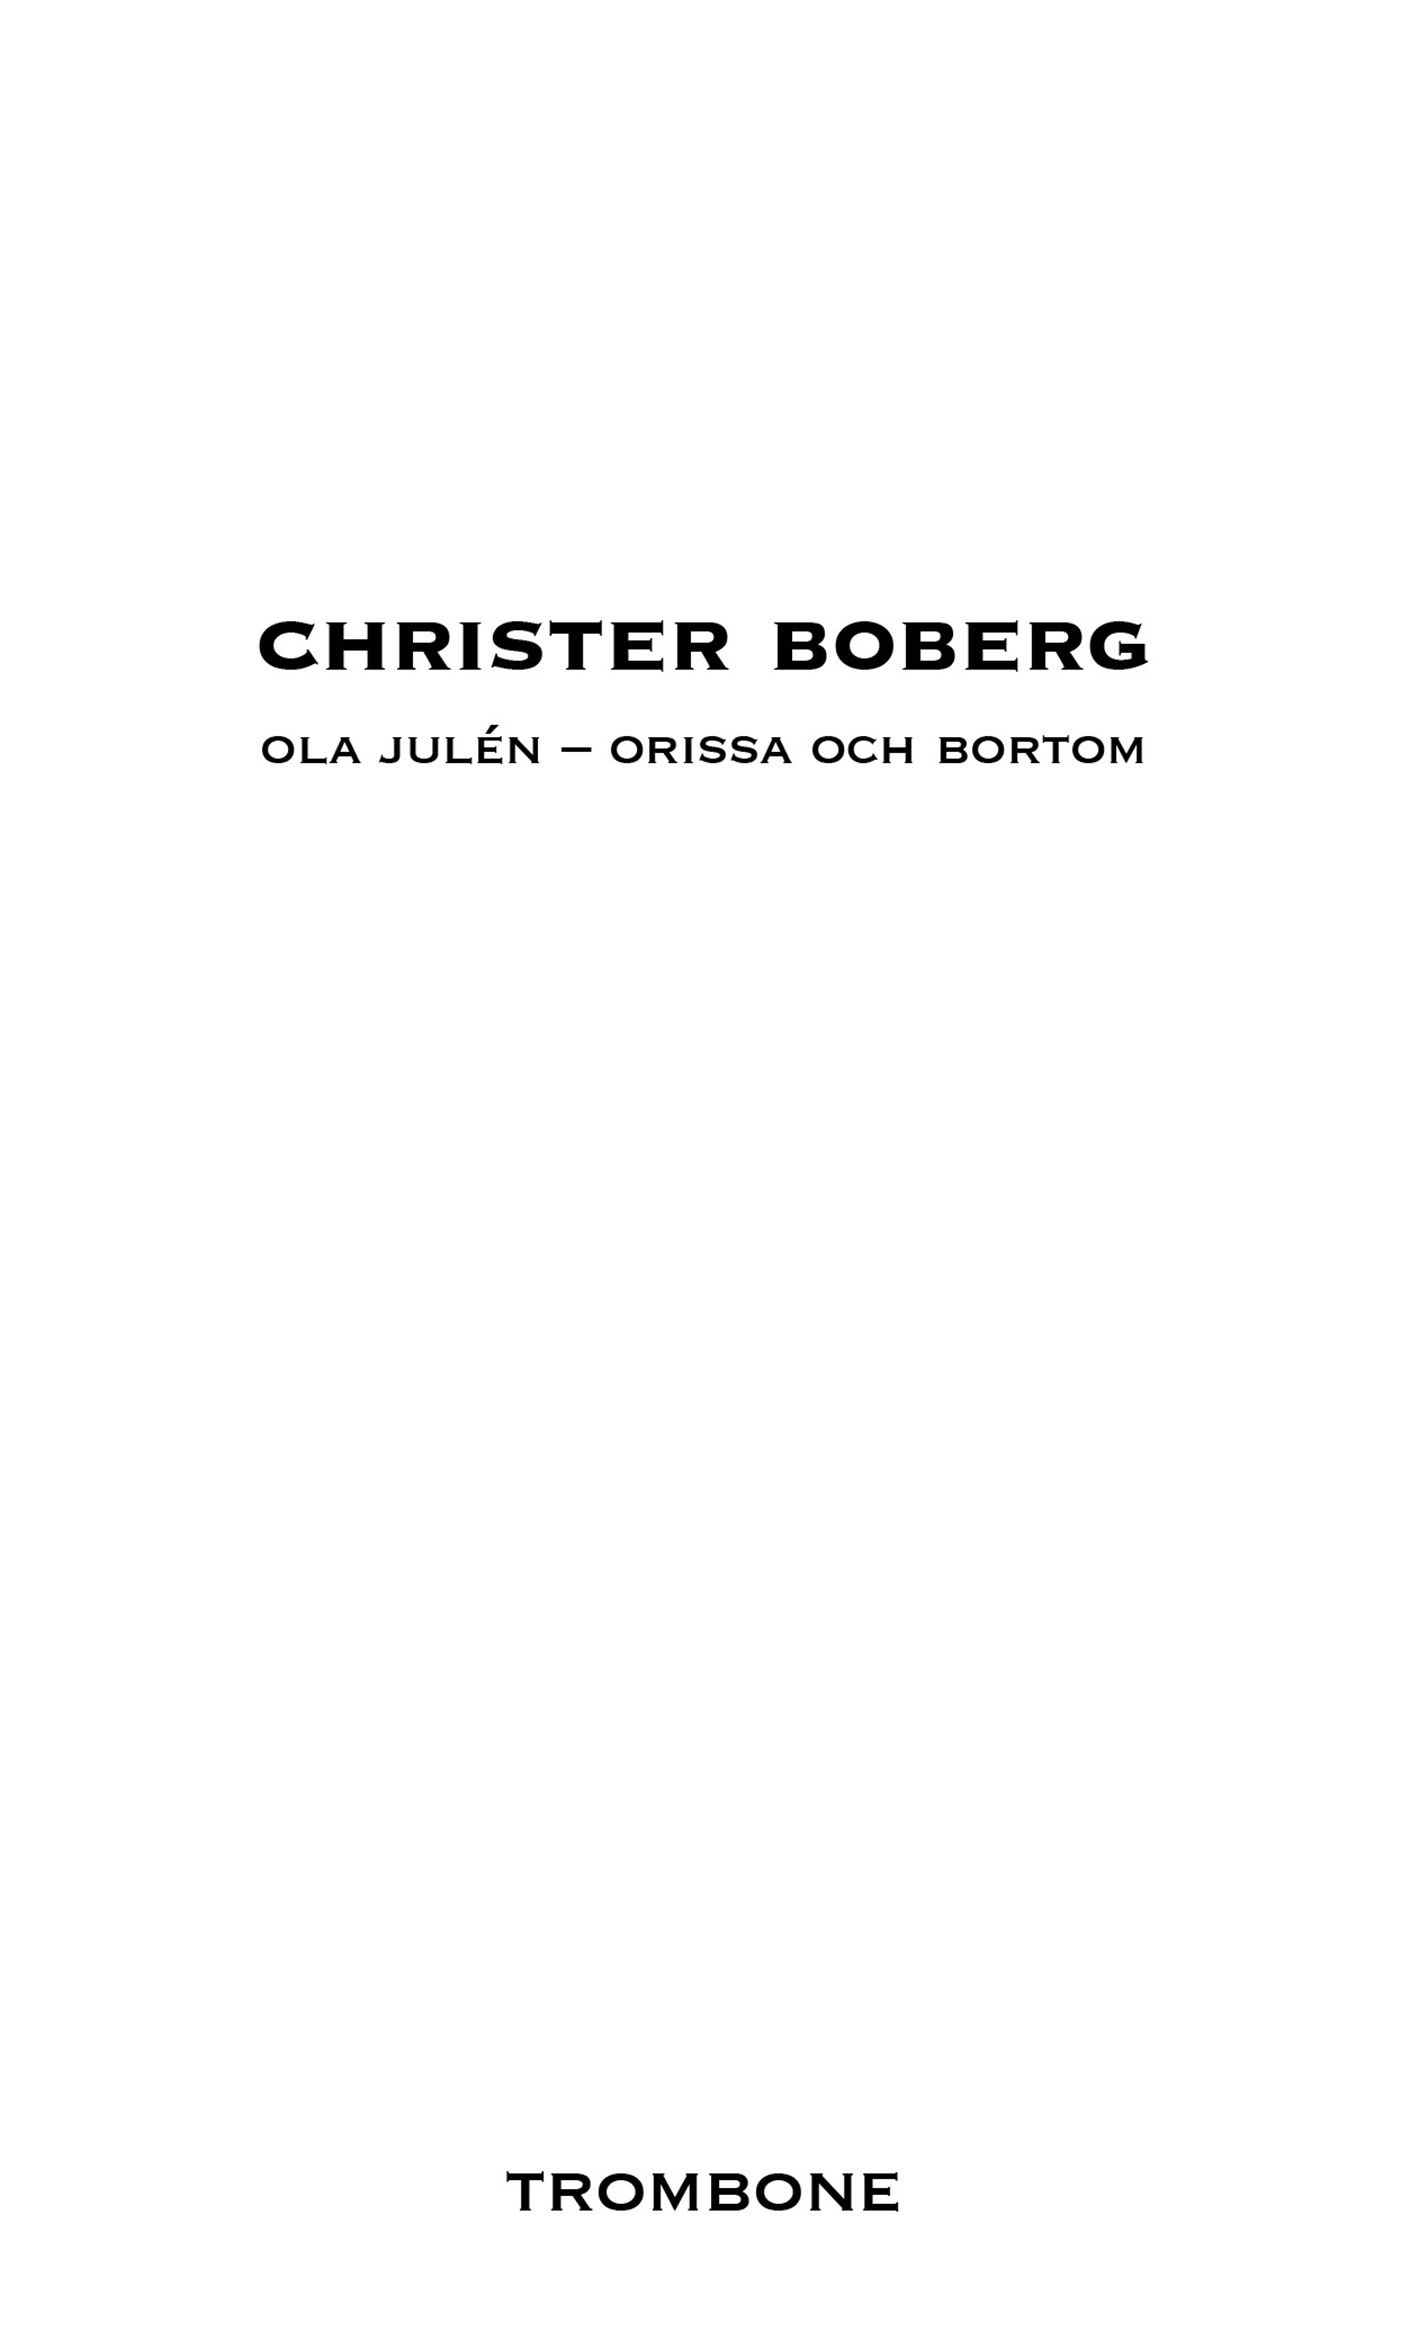 Ola Julén - Orissa och bortom, e-bok av Christer Boberg